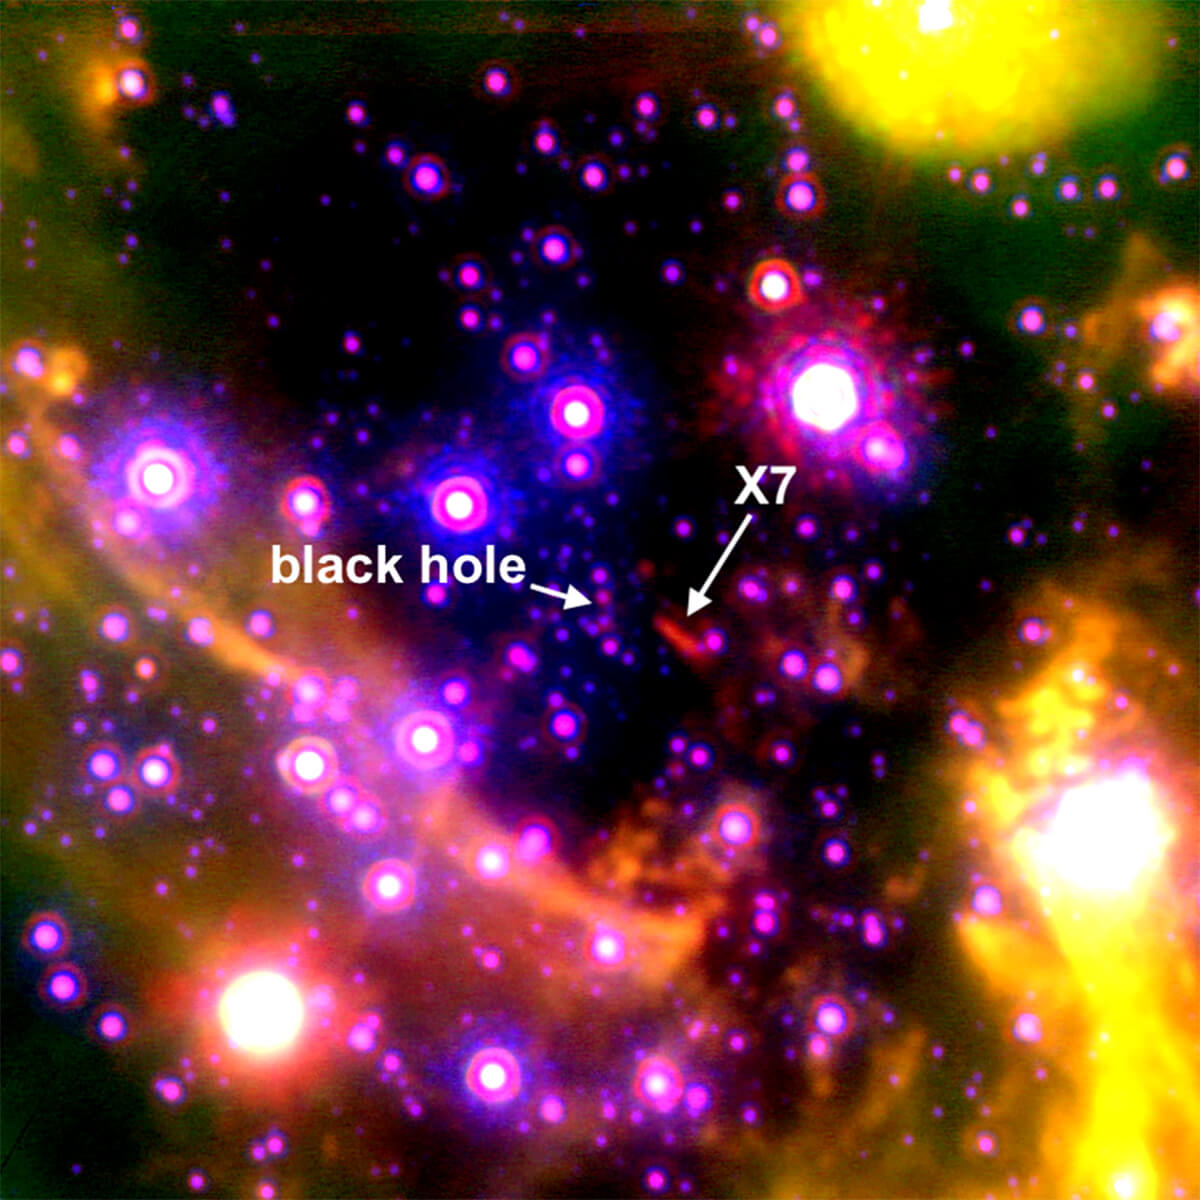 天の川銀河中心付近の謎の天体「X7」【今日の宇宙画像】